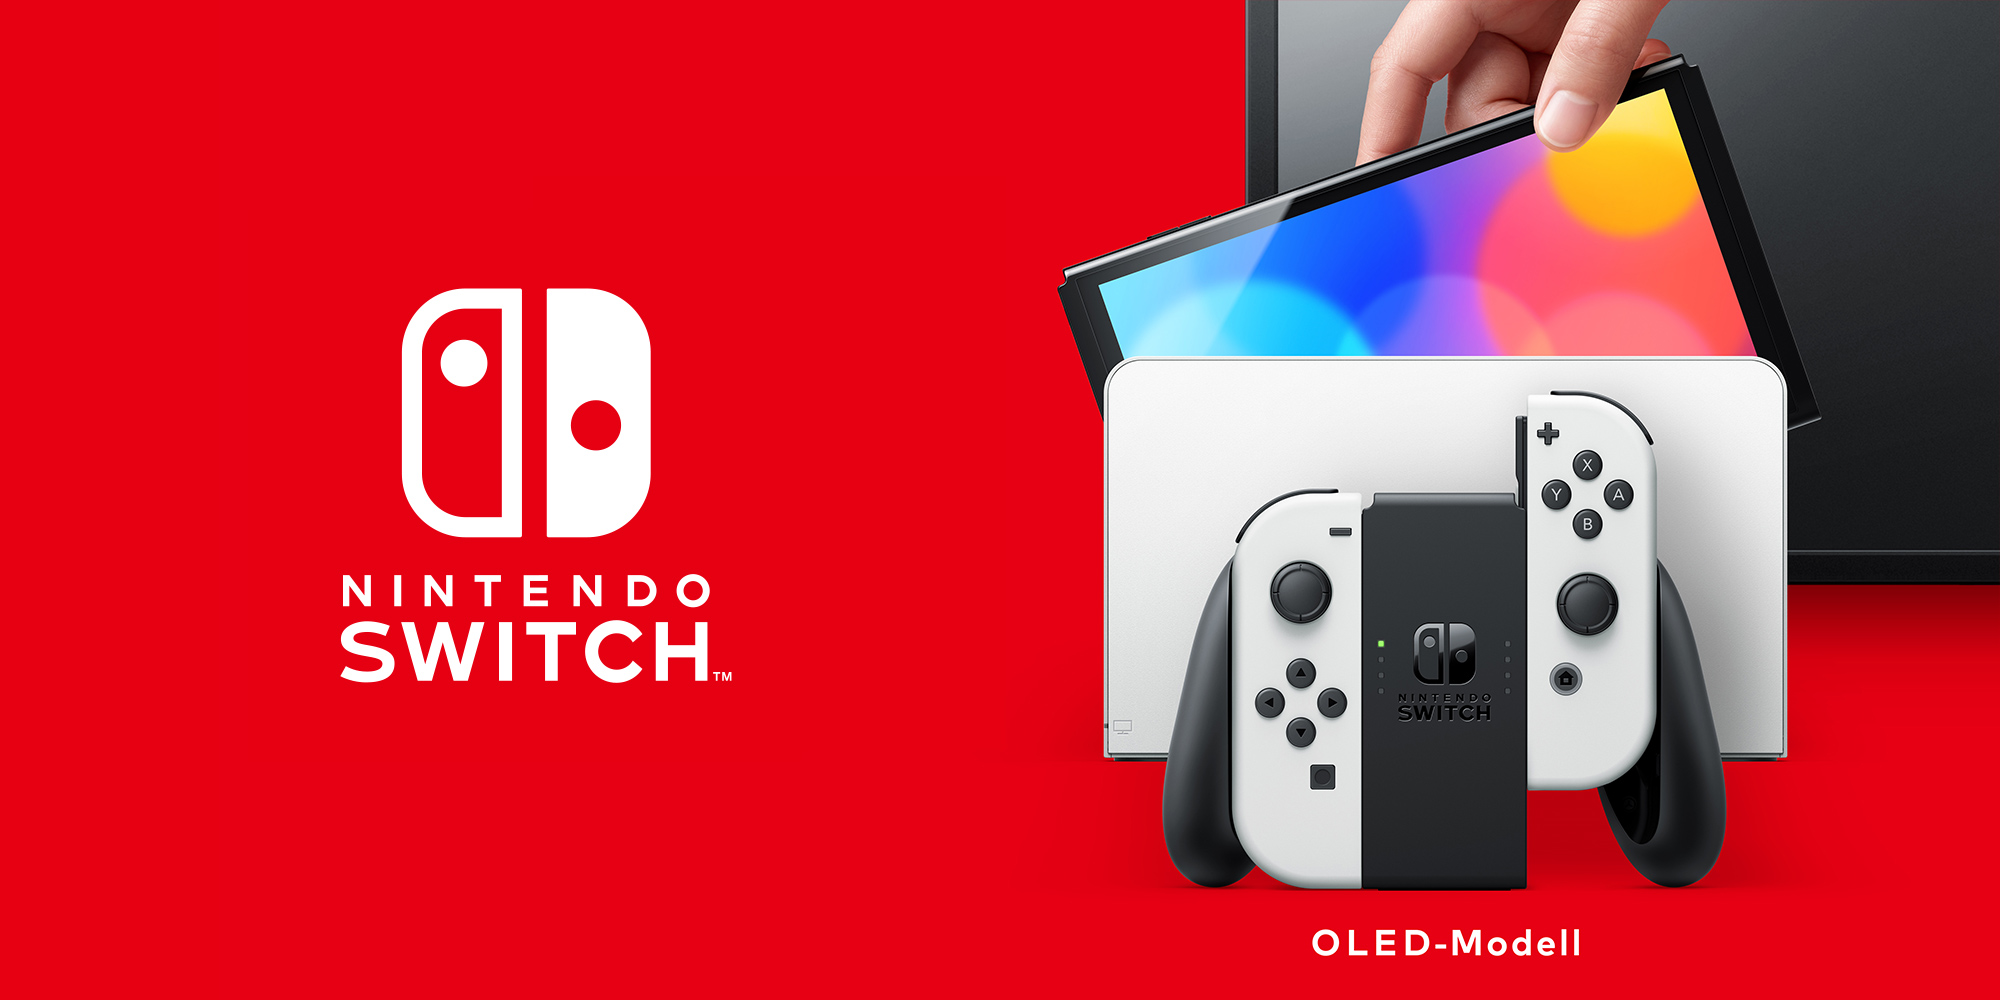 Nintendo Switch – OLED-Modell Hardware | | Nintendo